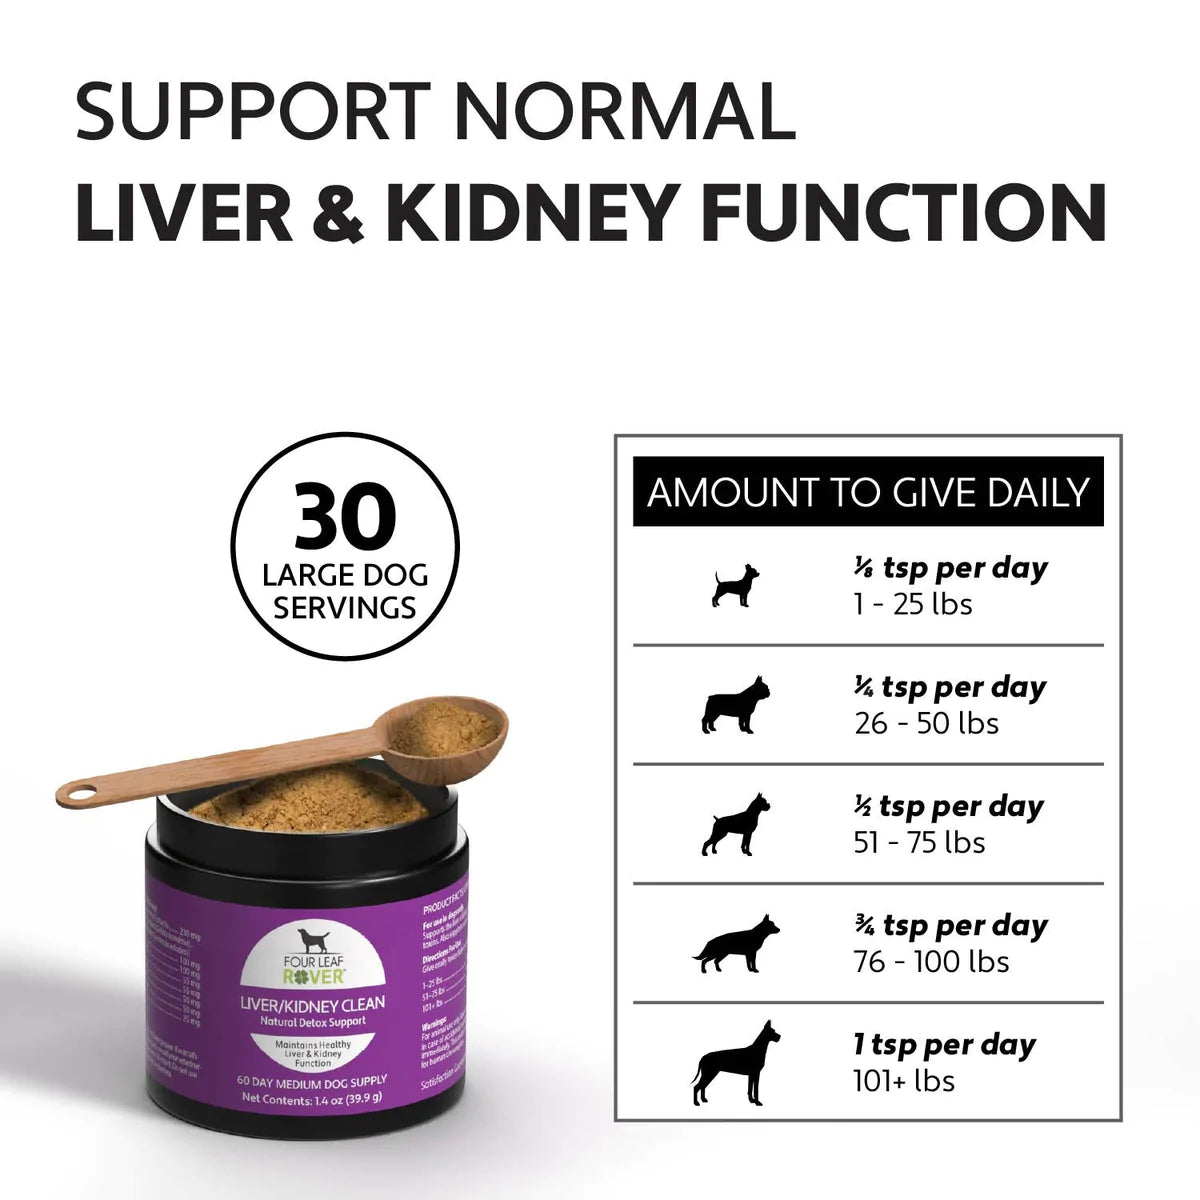 Liver/Kidney Clean - Powder